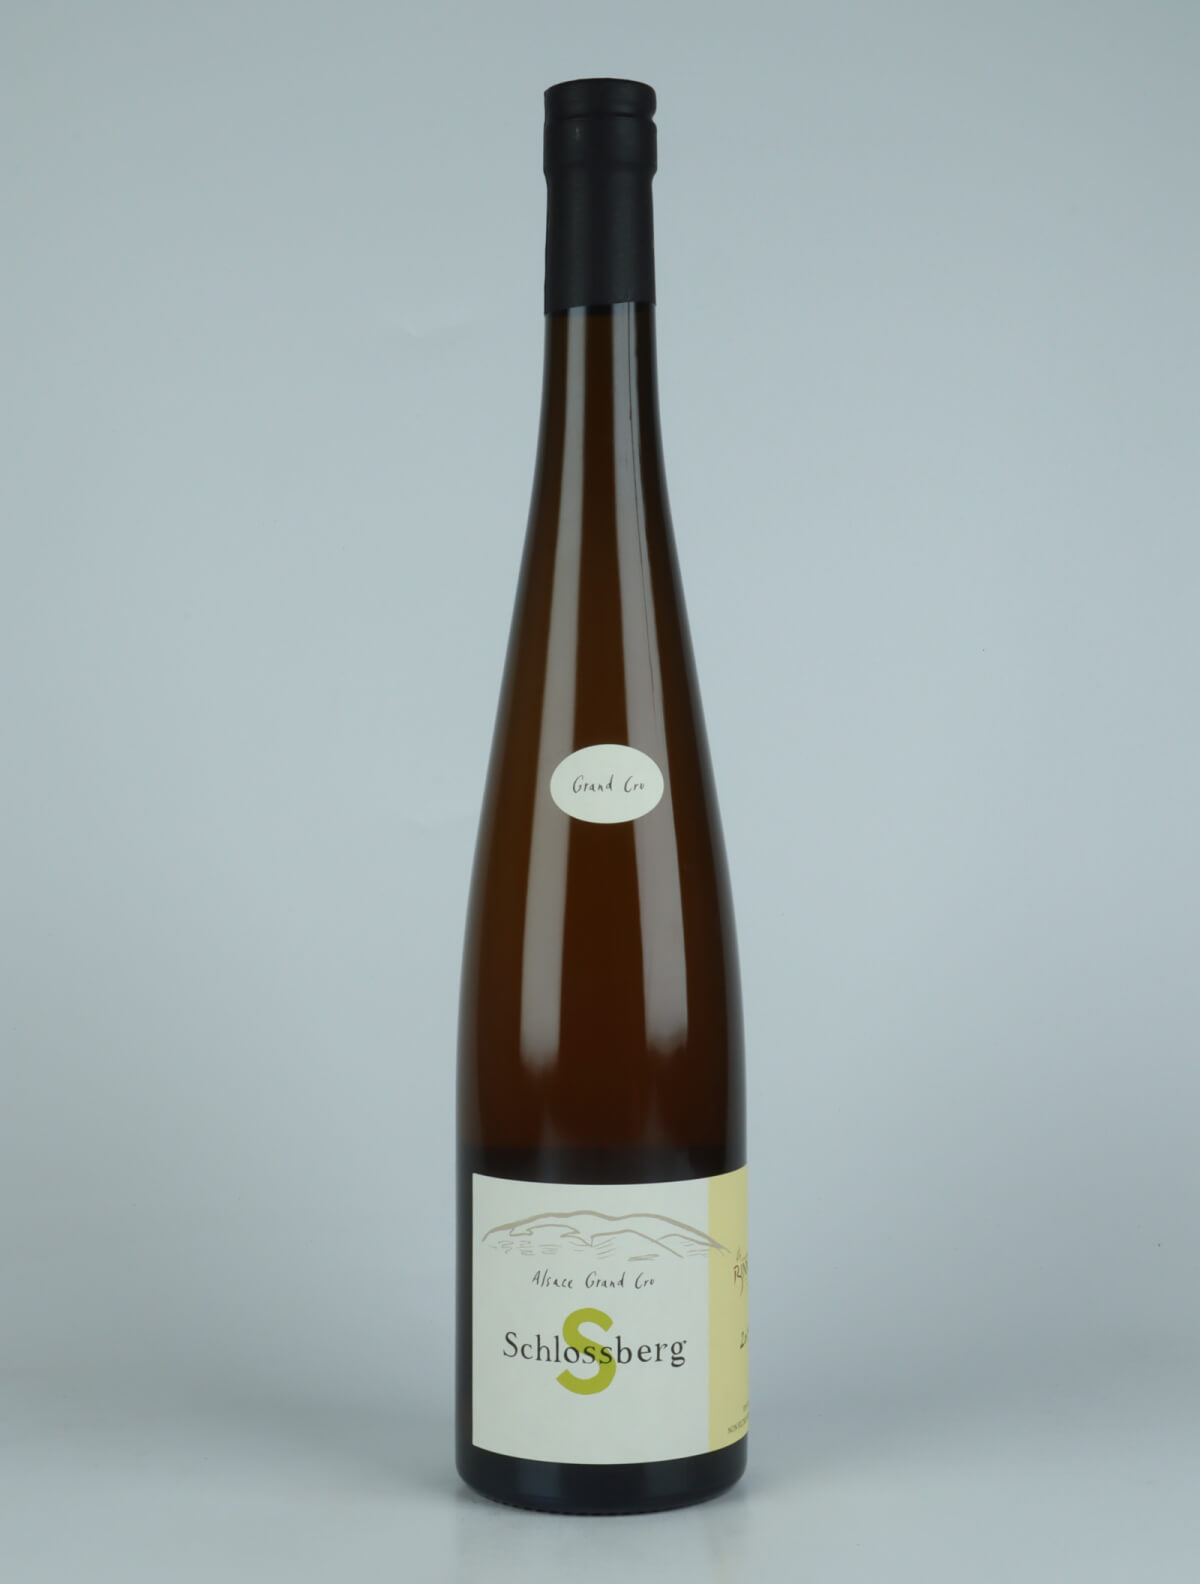 En flaske 2019 Riesling Grand Cru - Schlossberg Hvidvin fra Domaine Christian Binner, Alsace i Frankrig